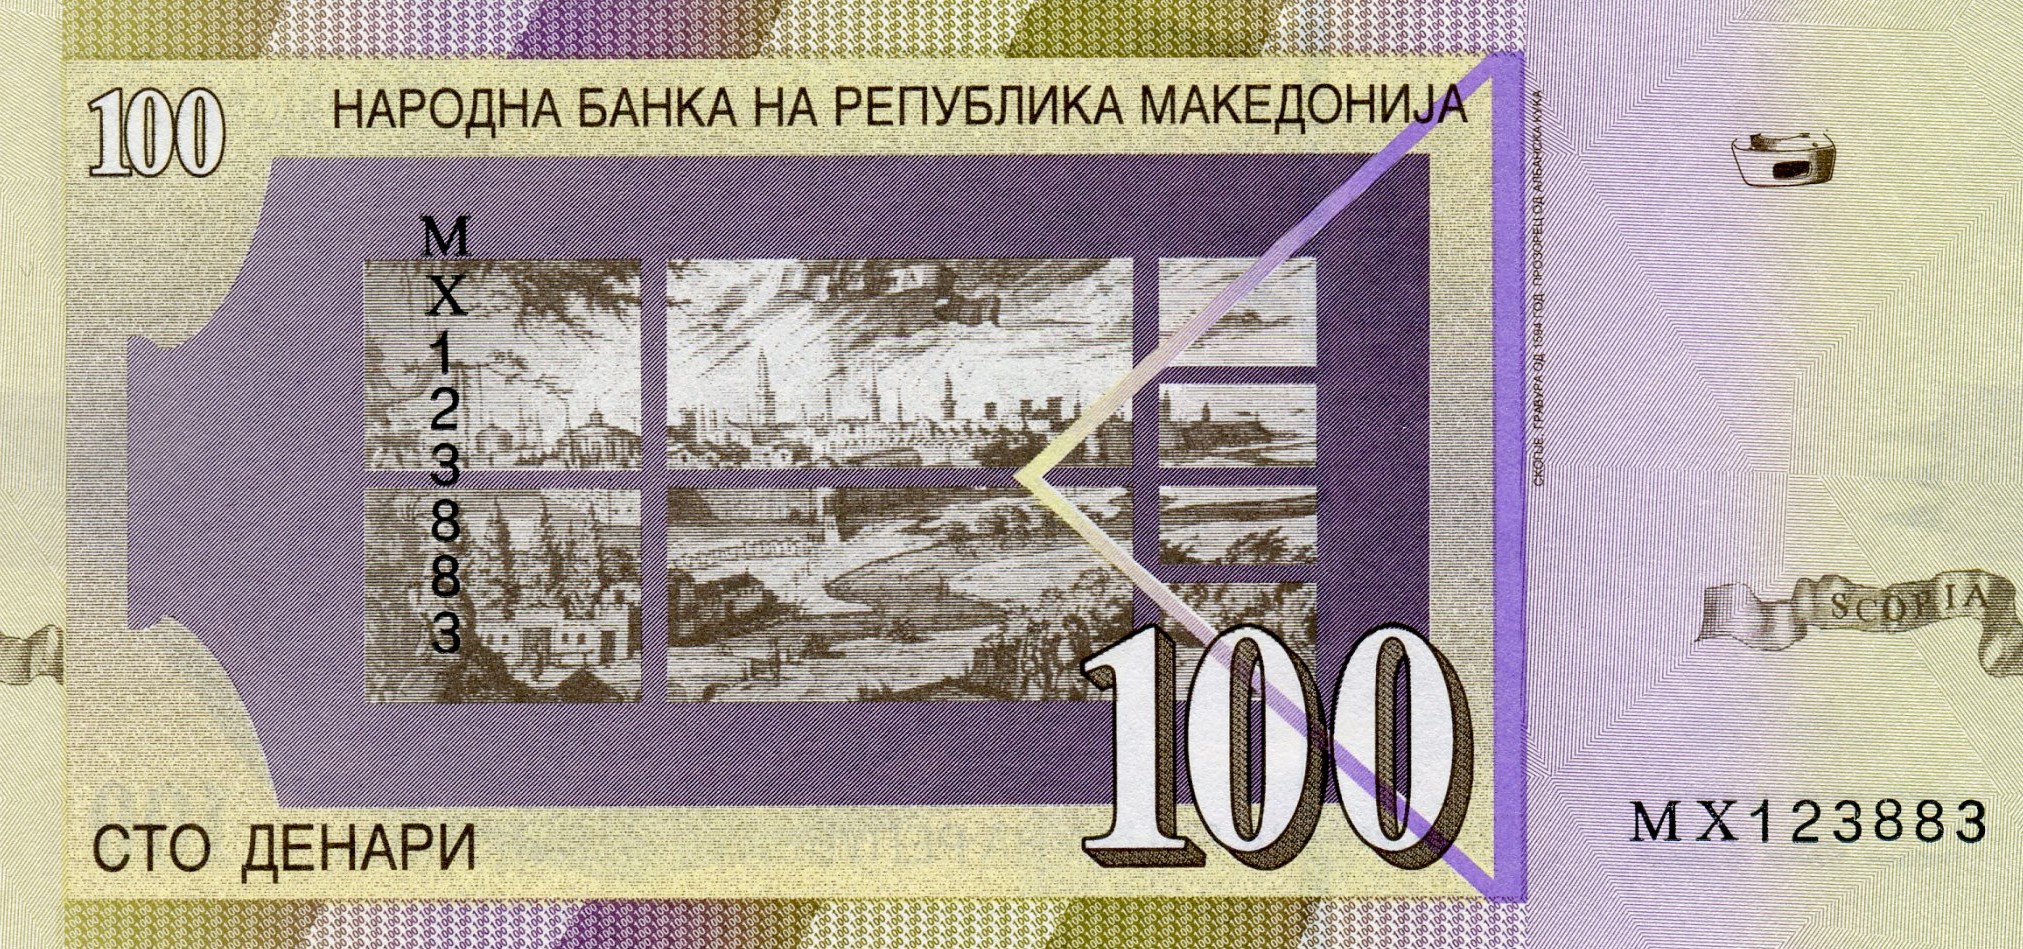 100 динар 2009 года. Реверс. Реферат Рефератович.